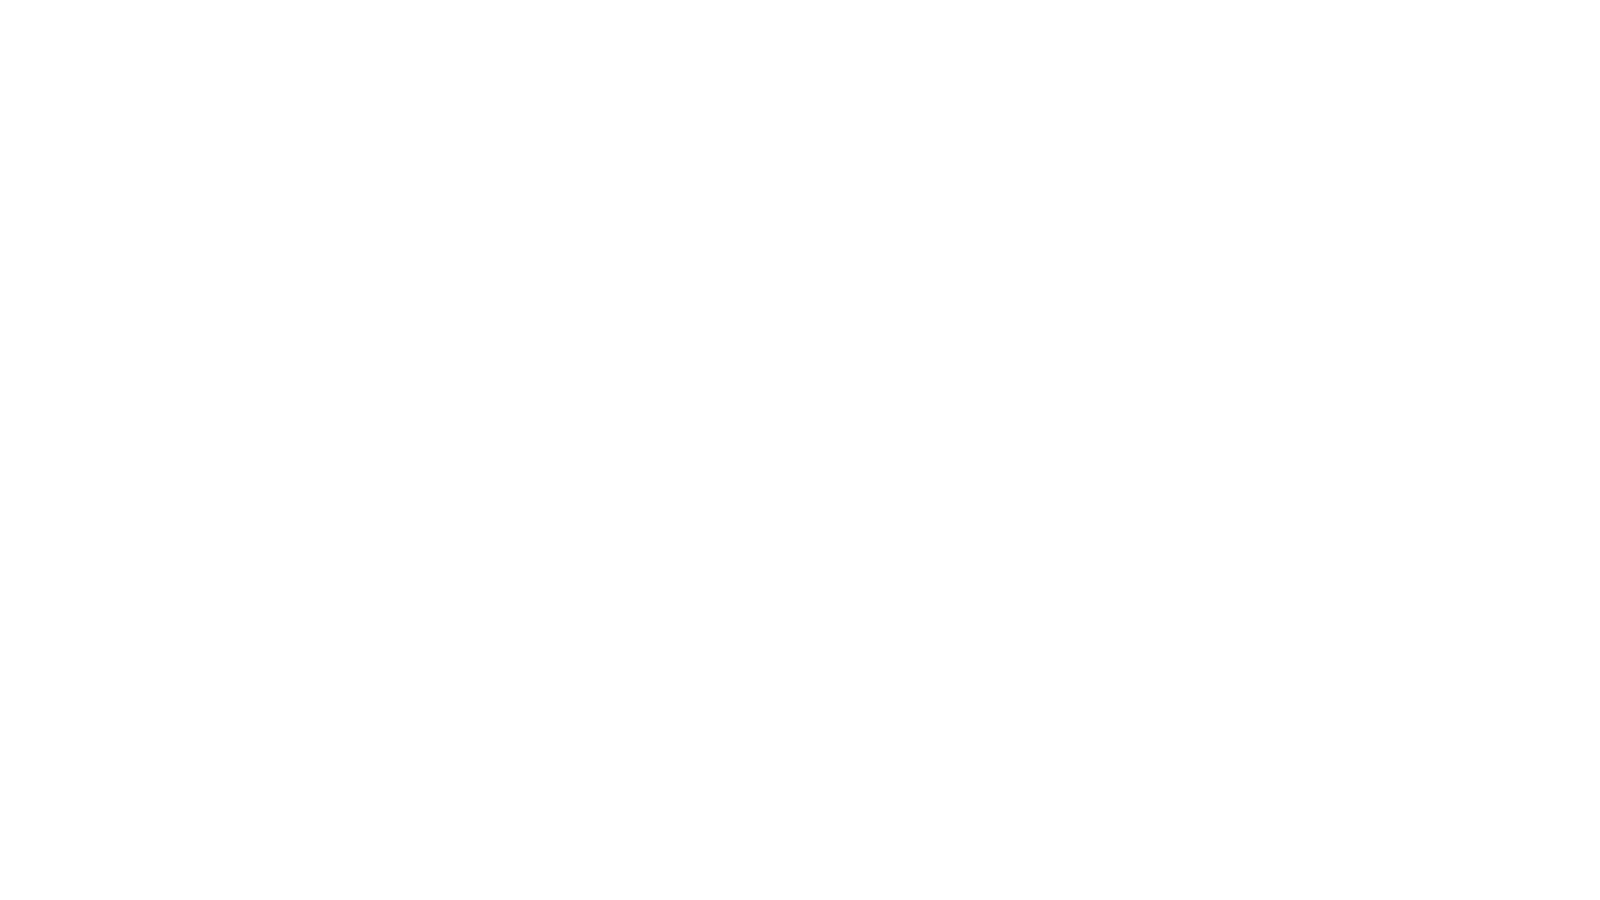 Zeichnung eines Embody Gaming-Stuhls, von vorne betrachtet, mit Maßangaben für Höhe und Breite auf einem schwarzen Hintergrund.